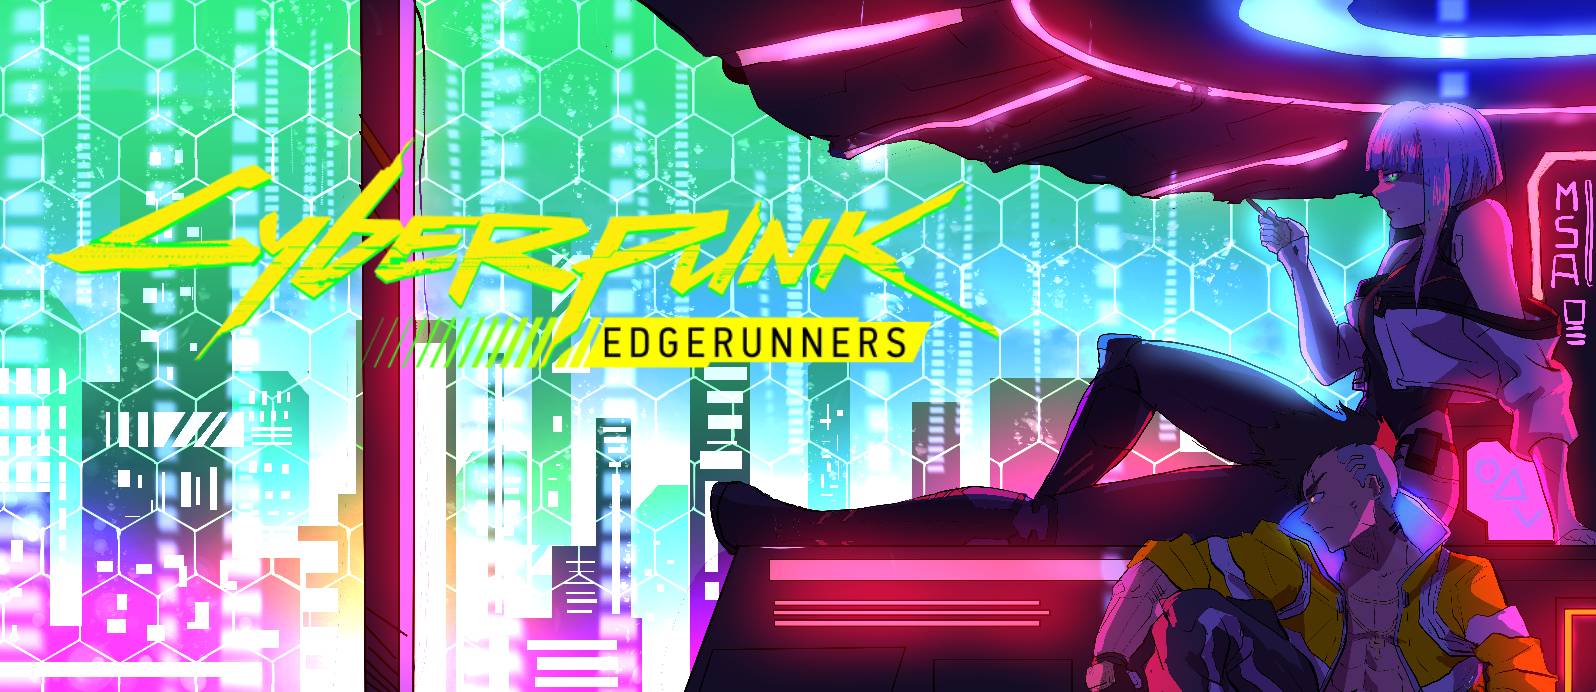 CyberPunk: Edgerunners Wallpaper by Franky4FingersX2 on DeviantArt